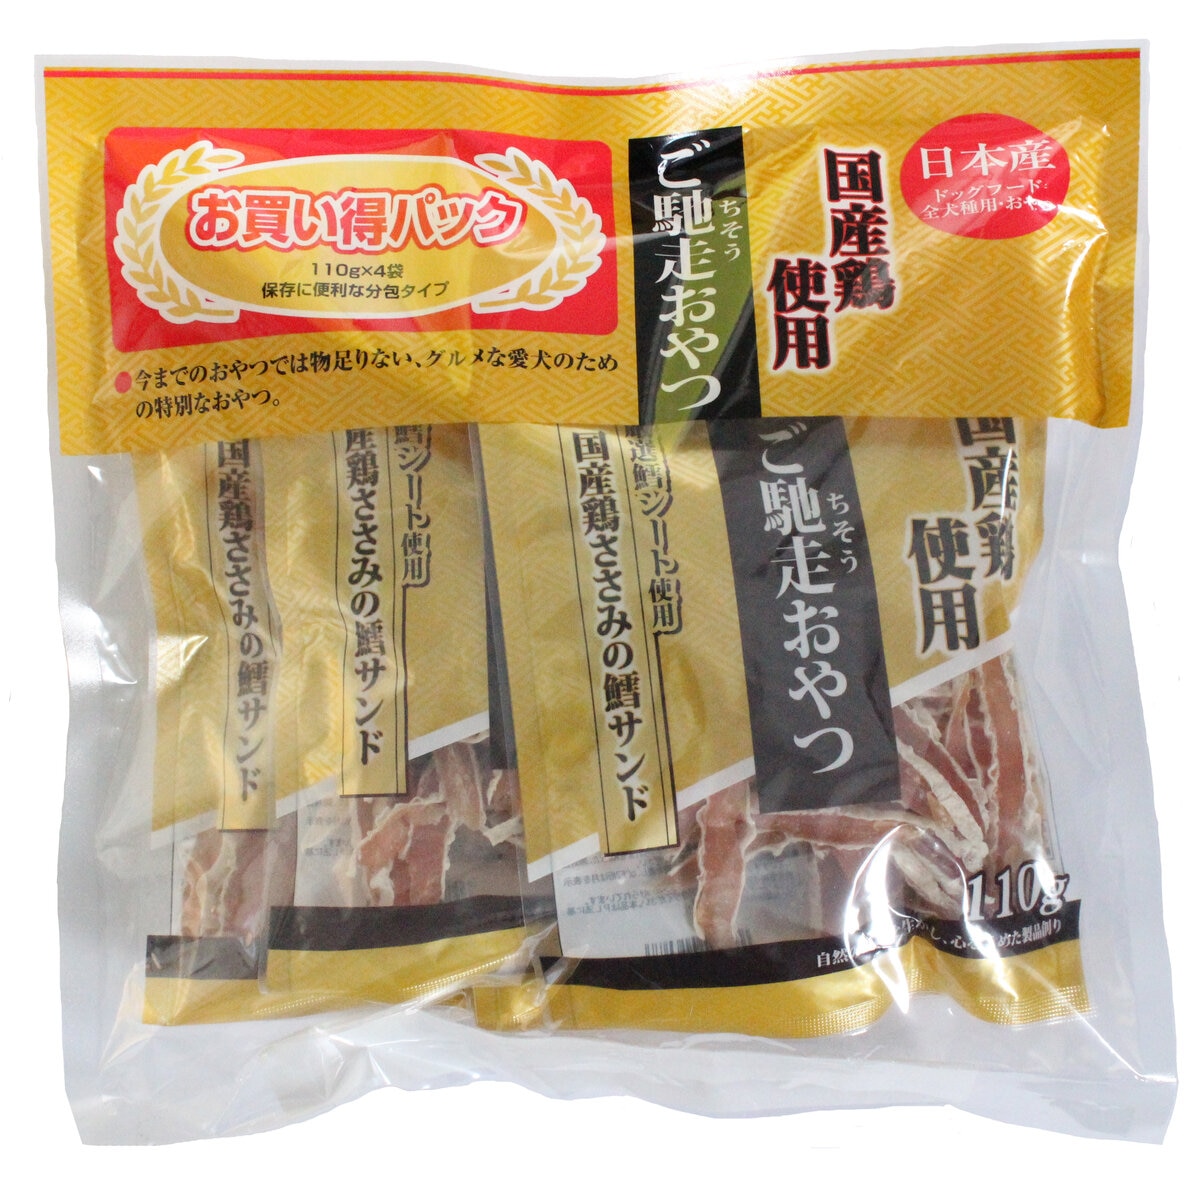 ご馳走おやつ 国産鶏ささみ鱈サンド 110ｇ X 4パック Costco Japan